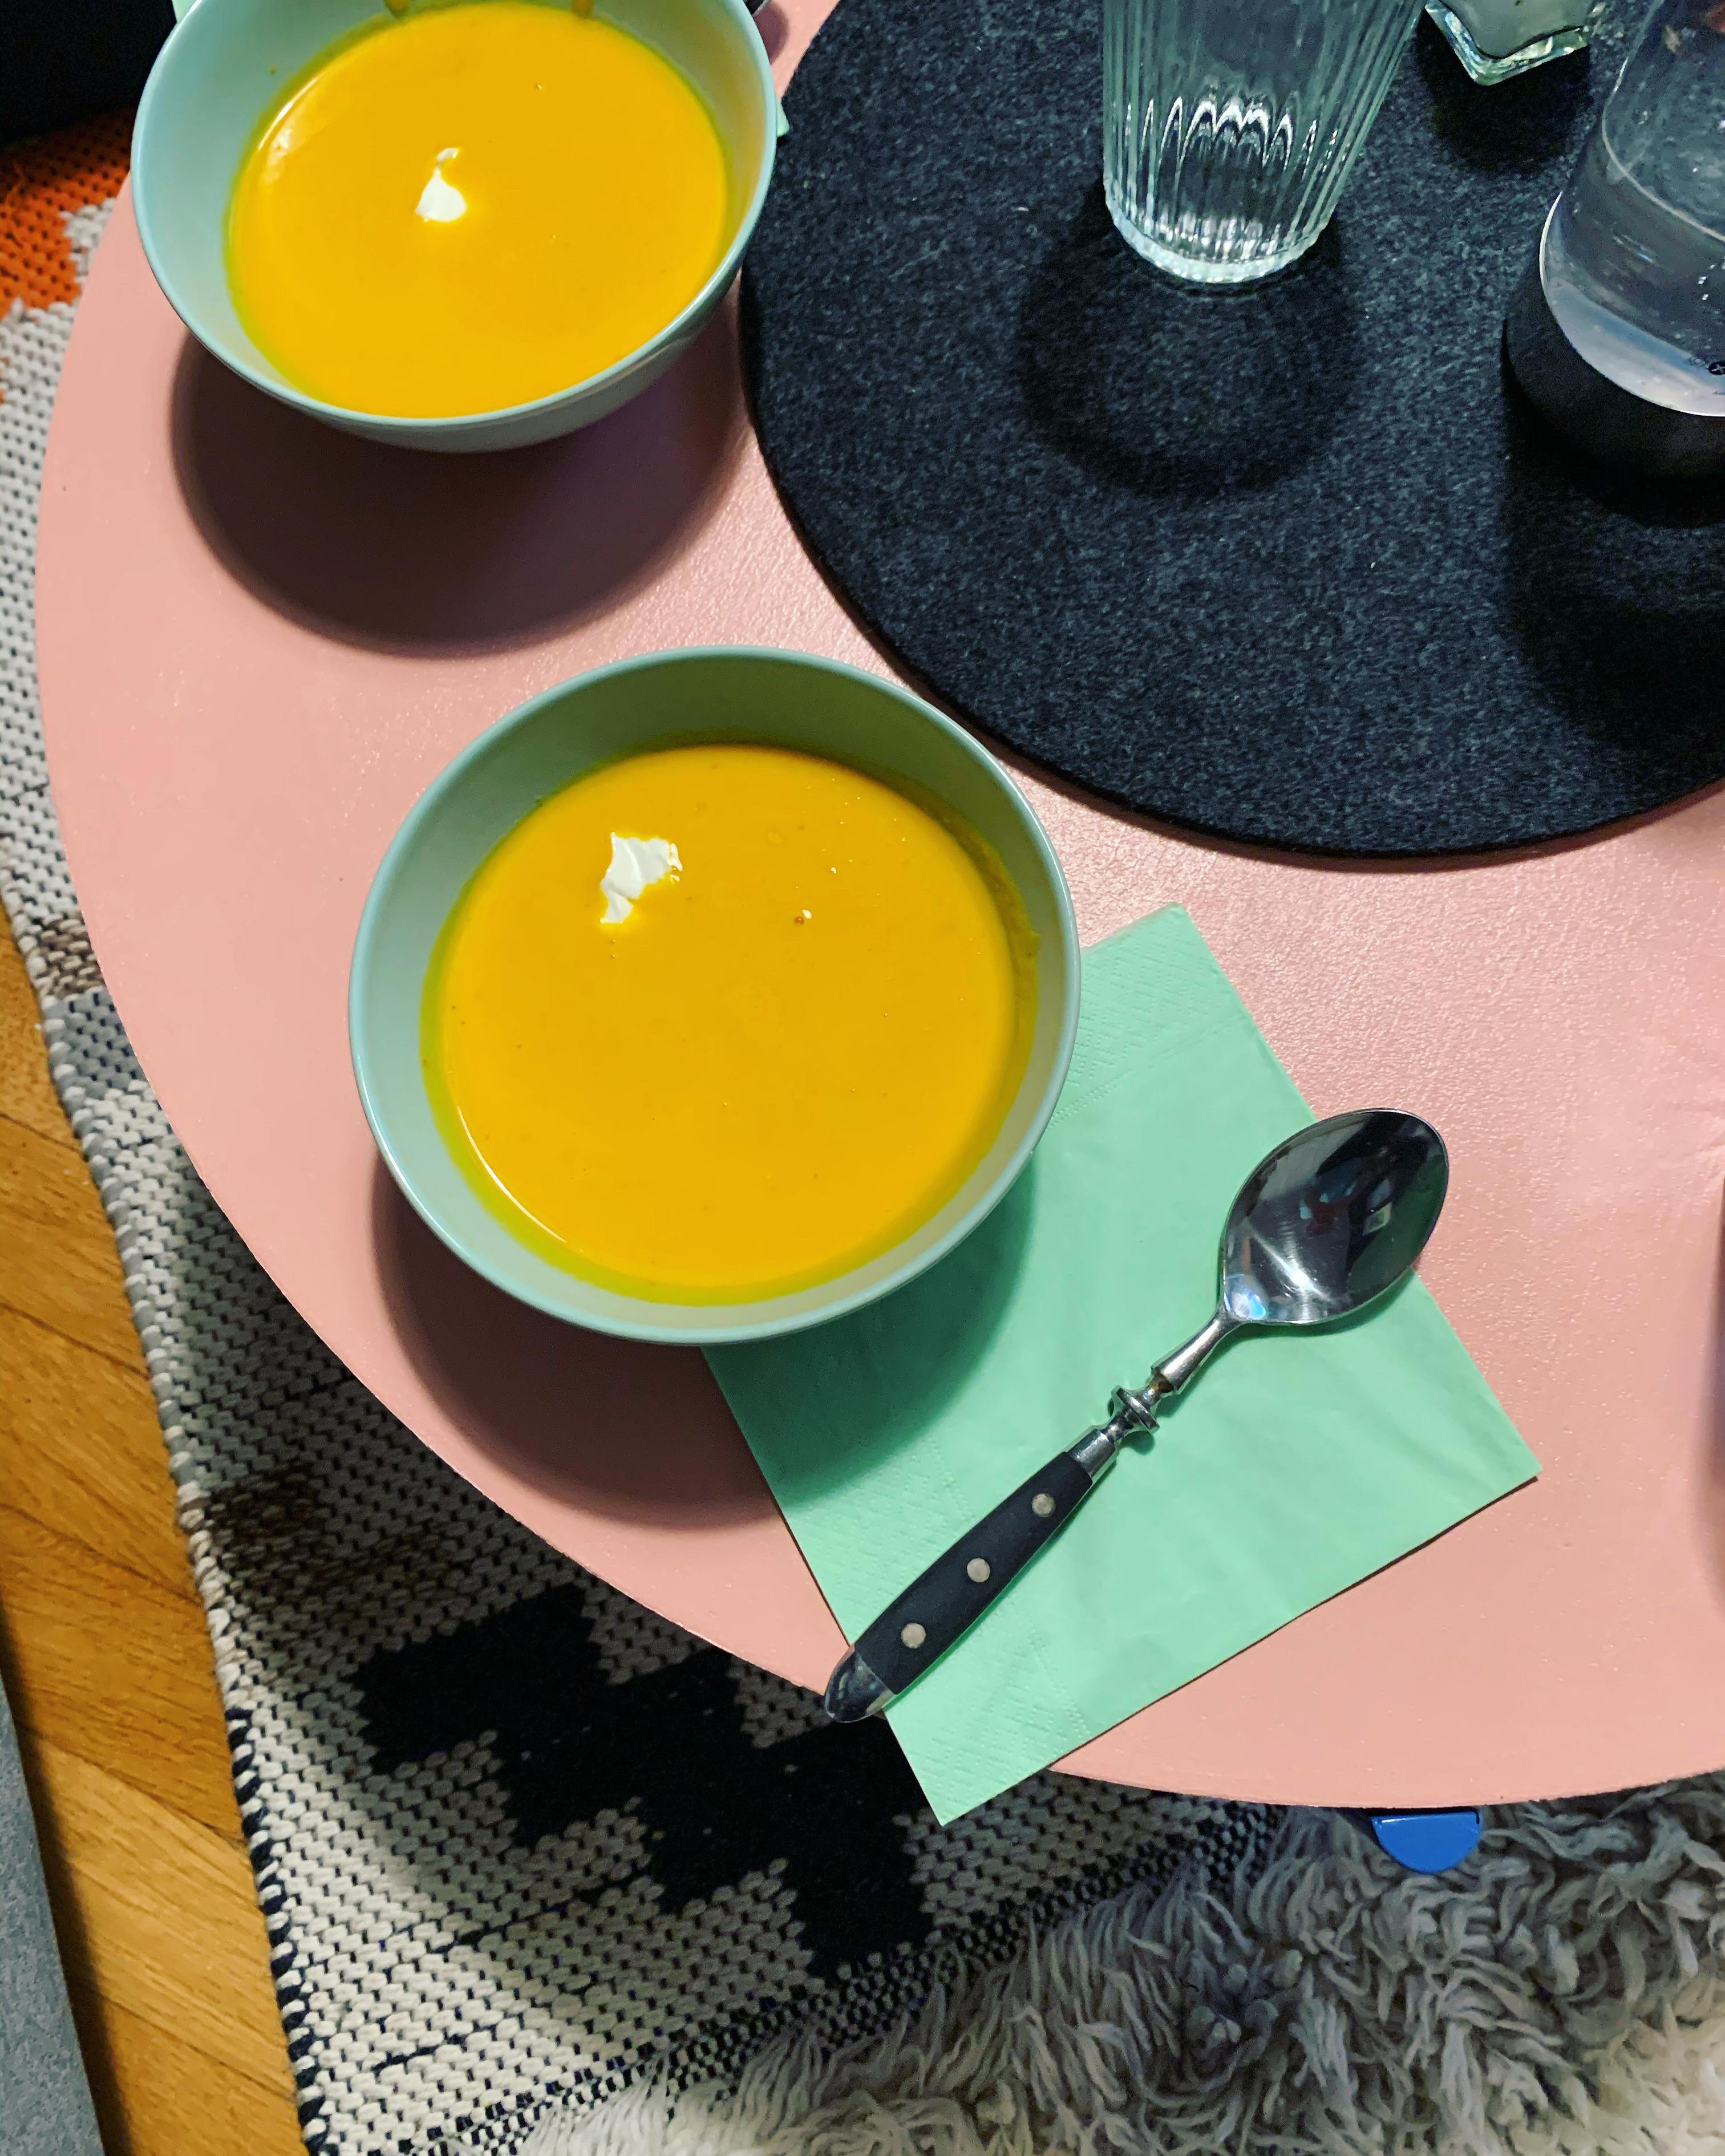 Wenn’s draußen kalt und ungemütlich wird, gibts nichts besseres als heiße Suppe
#suppe #karotteingwer #colourblocking